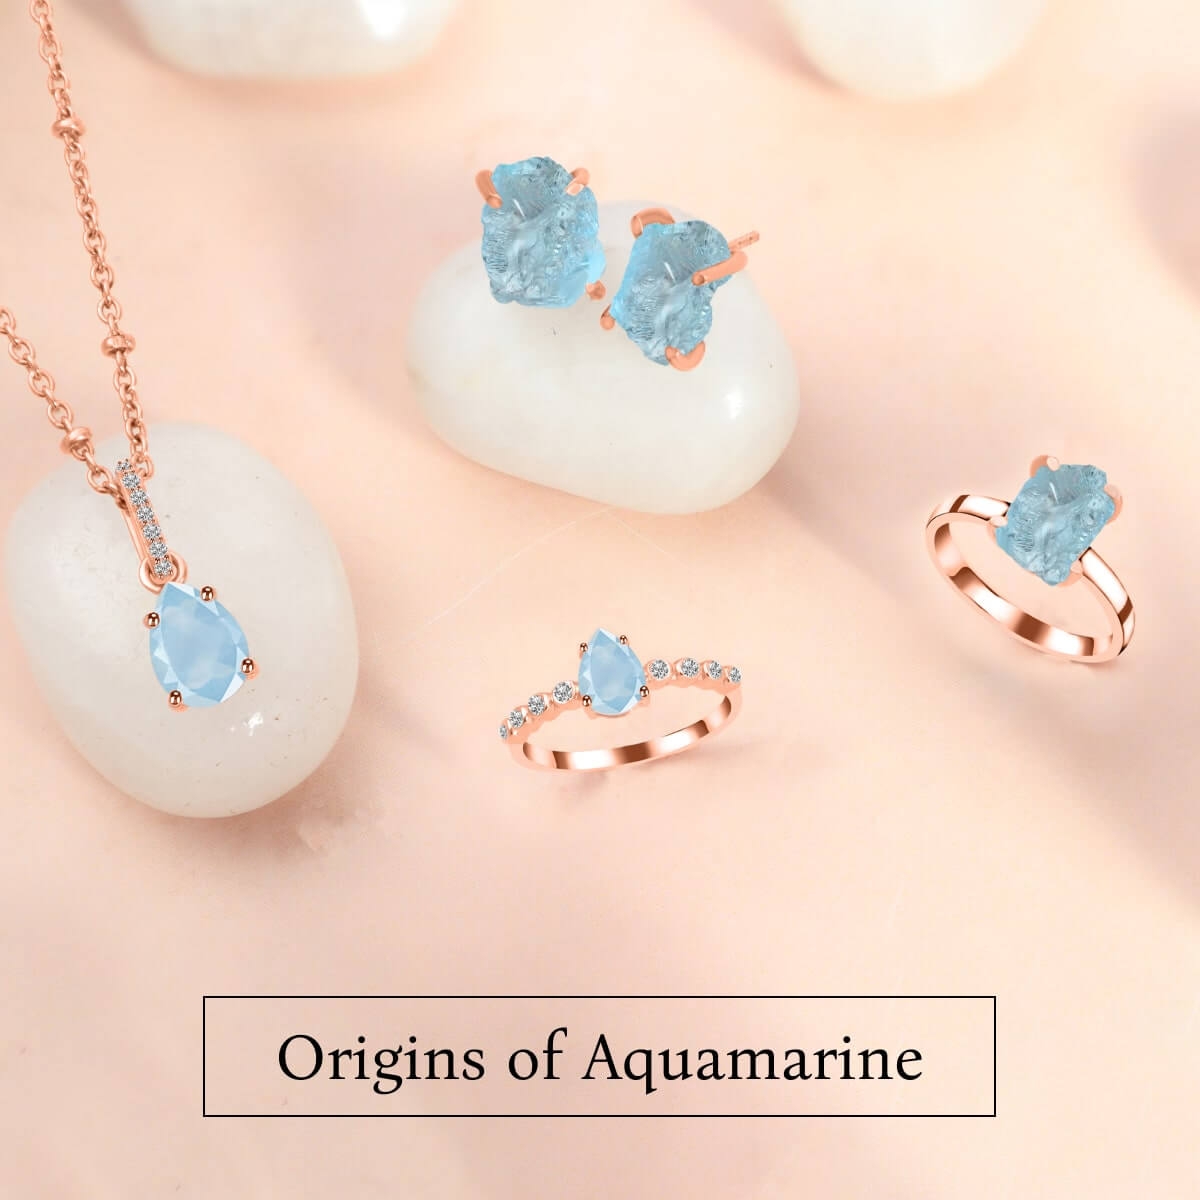 Origins of Aquamarine